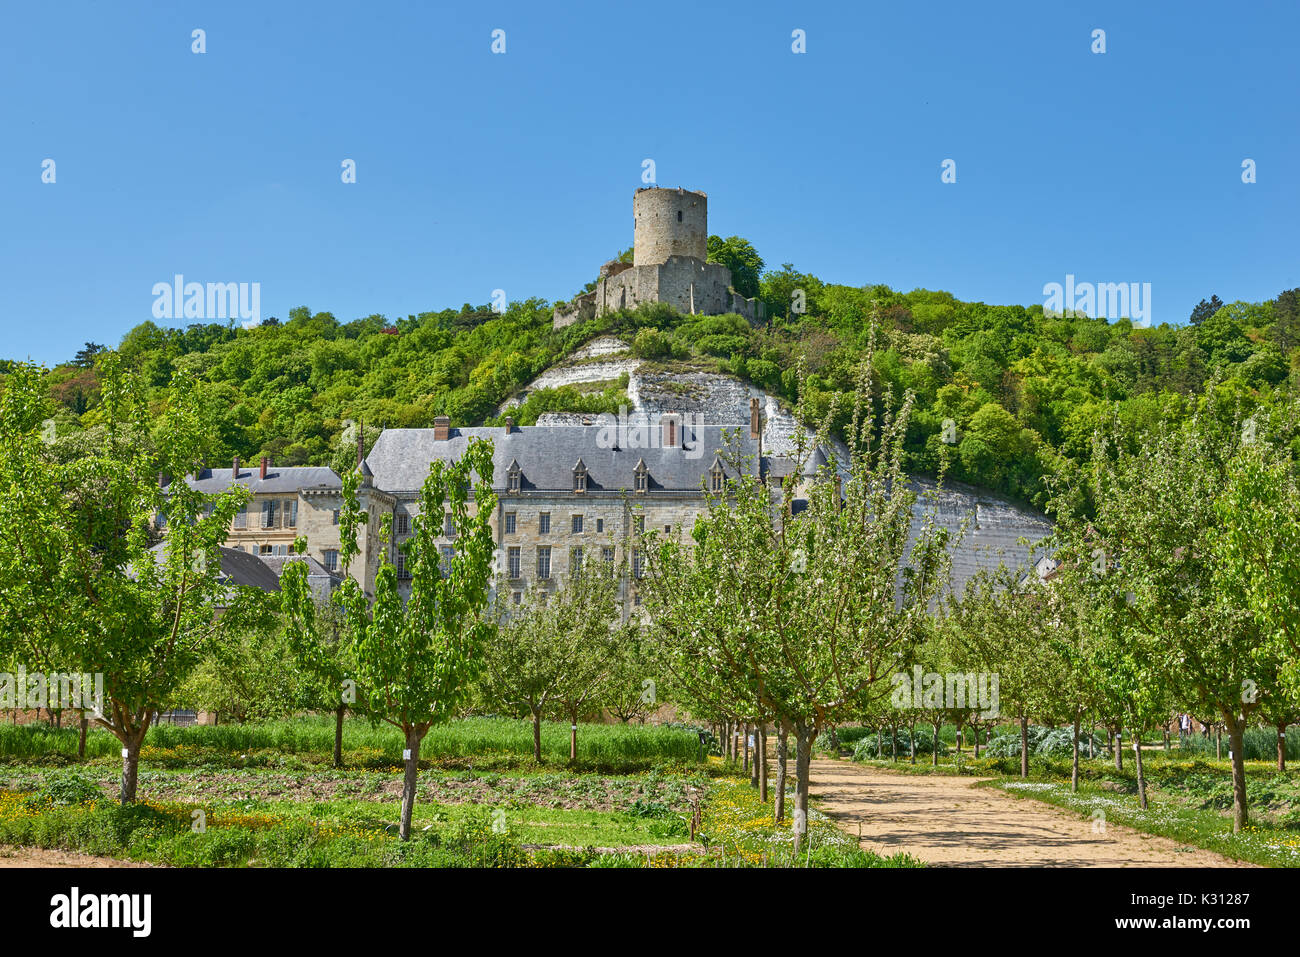 Château de La Roche-Guyon, France Stock Photo - Alamy